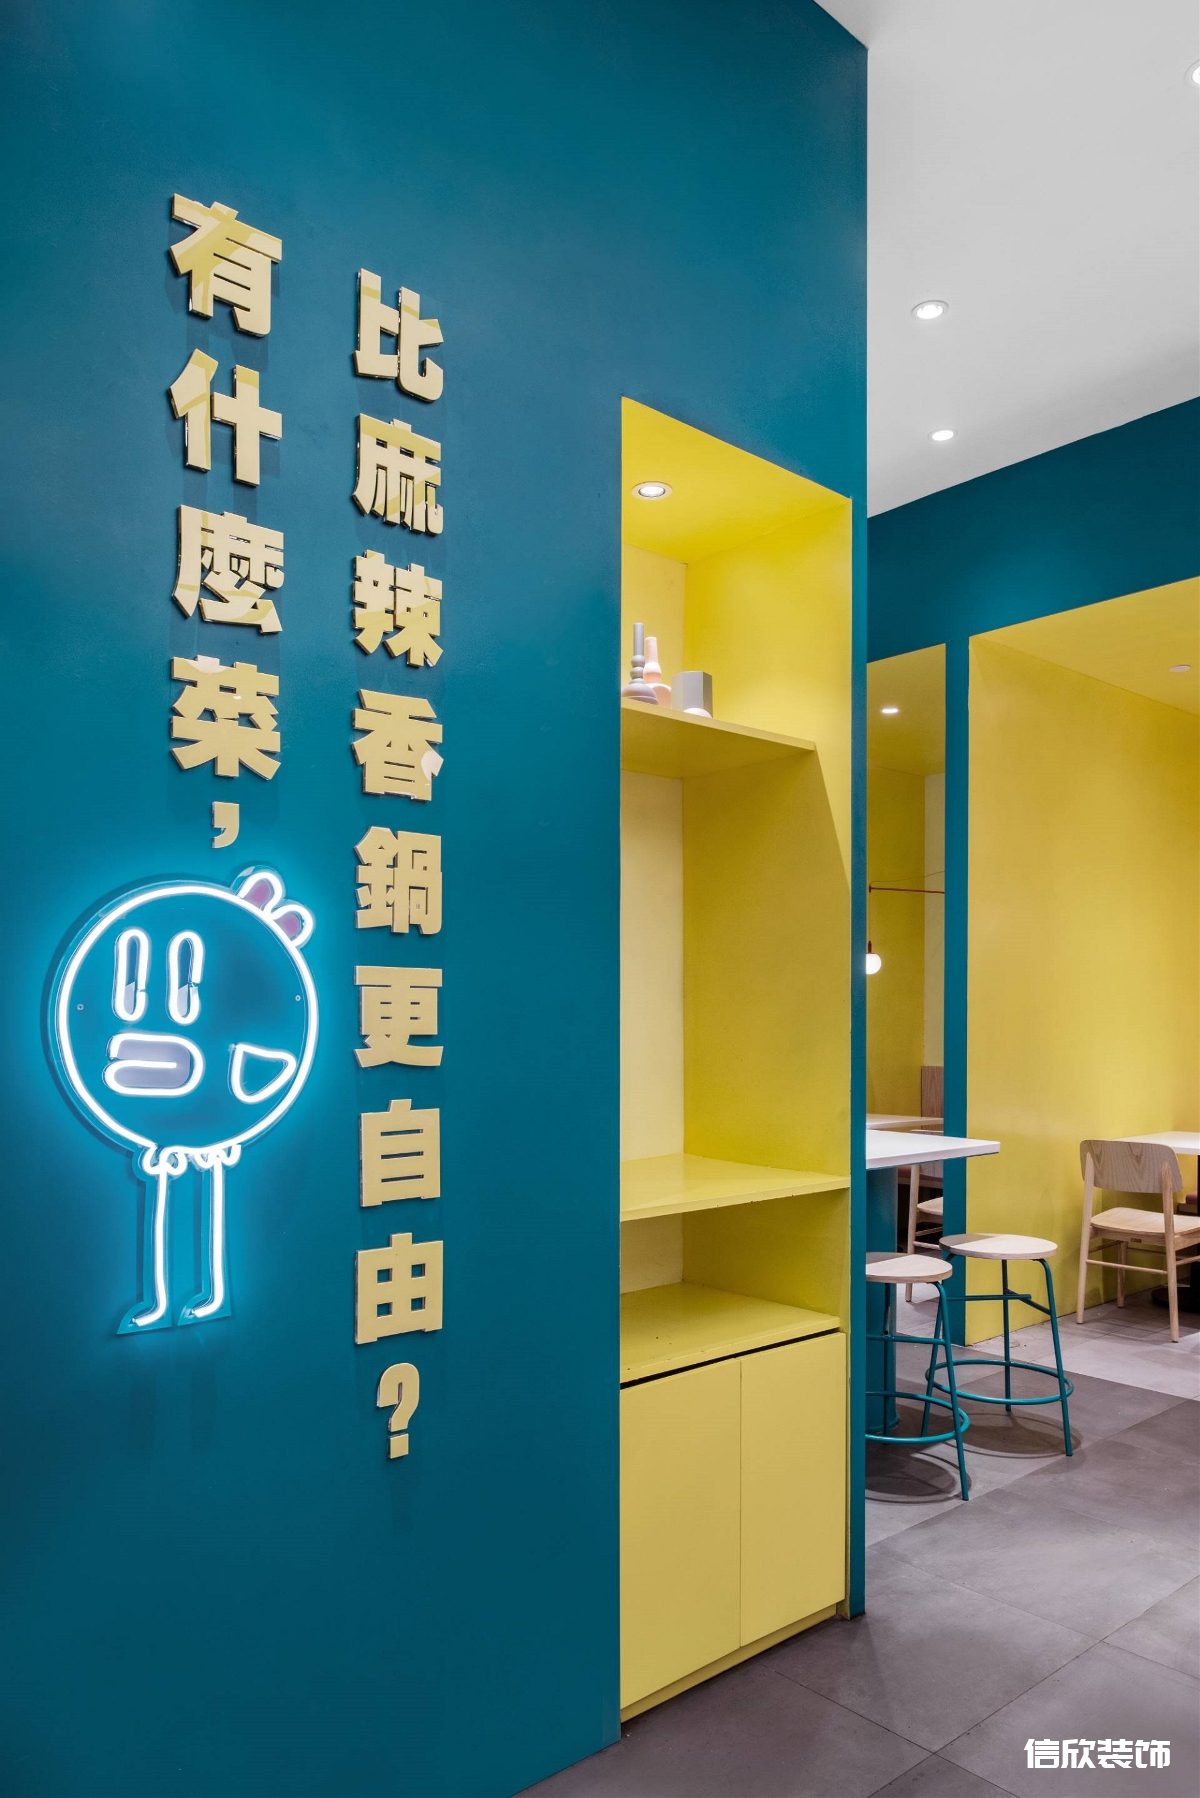 福田购物公园蓝色麻辣小快餐店入户墙面广告词装修设计